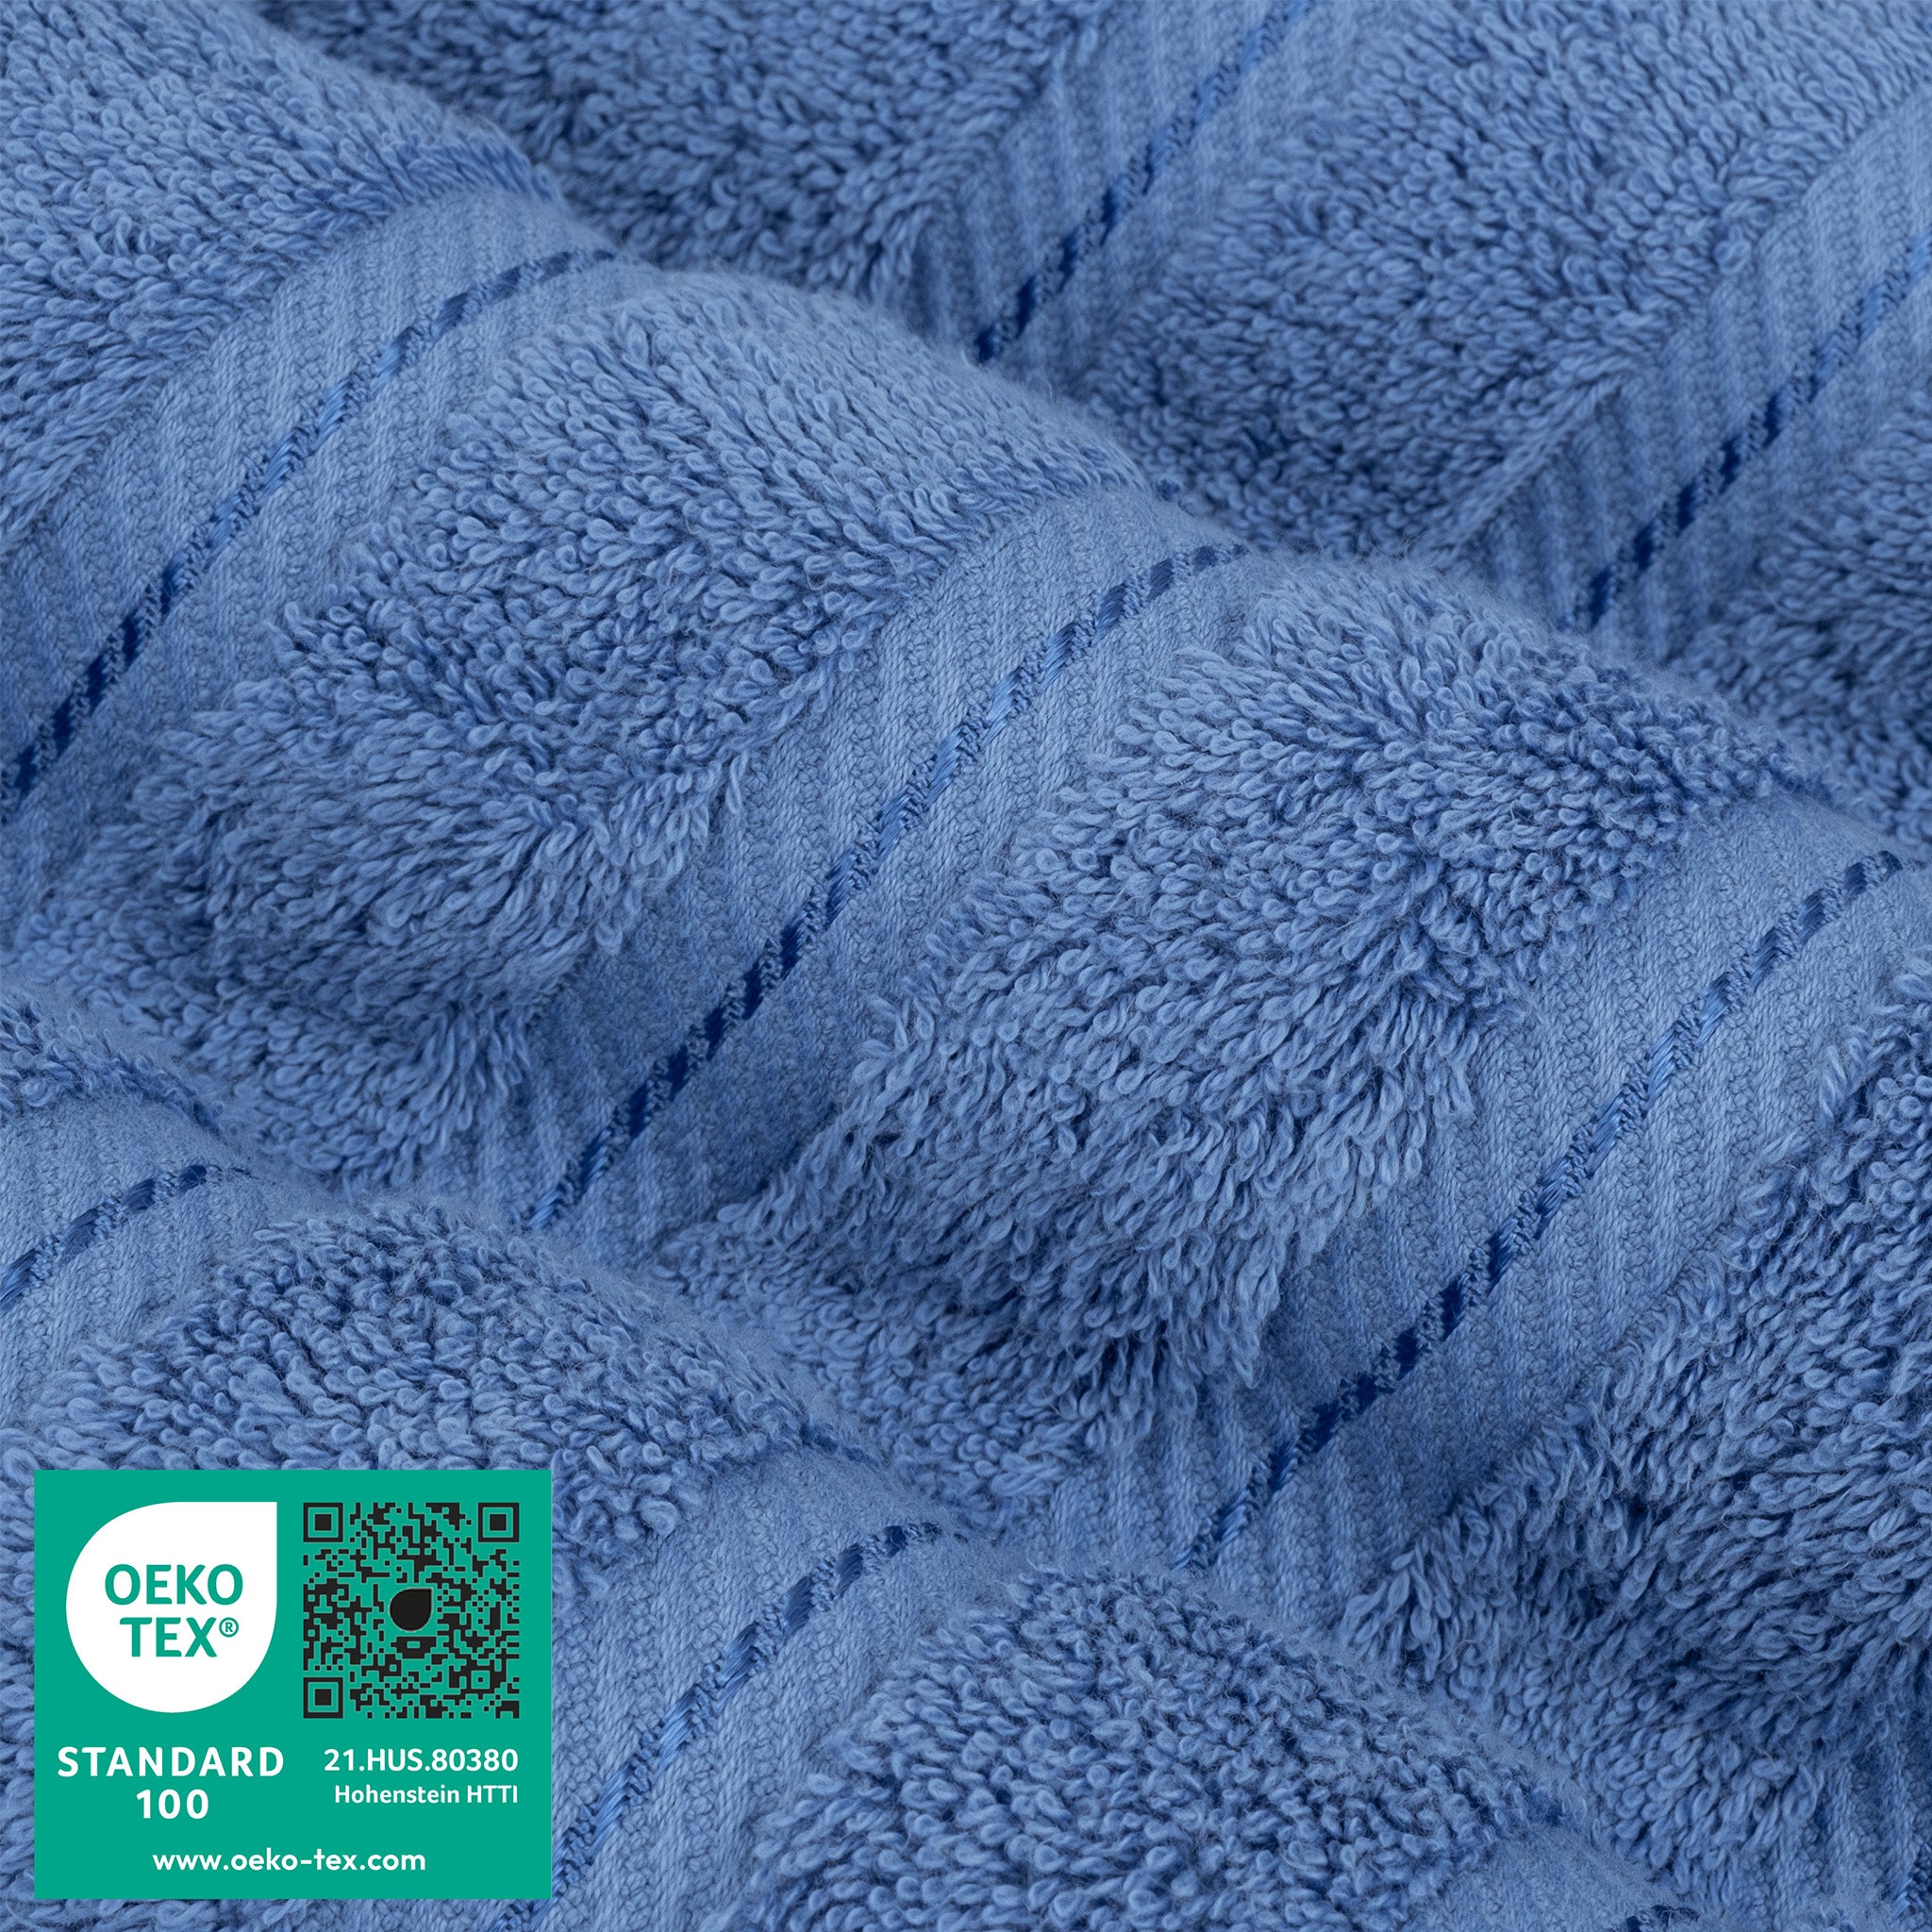 American Soft Linen 100% Turkish Cotton 4 Pack Bath Towel Set Wholesale electric-blue-3